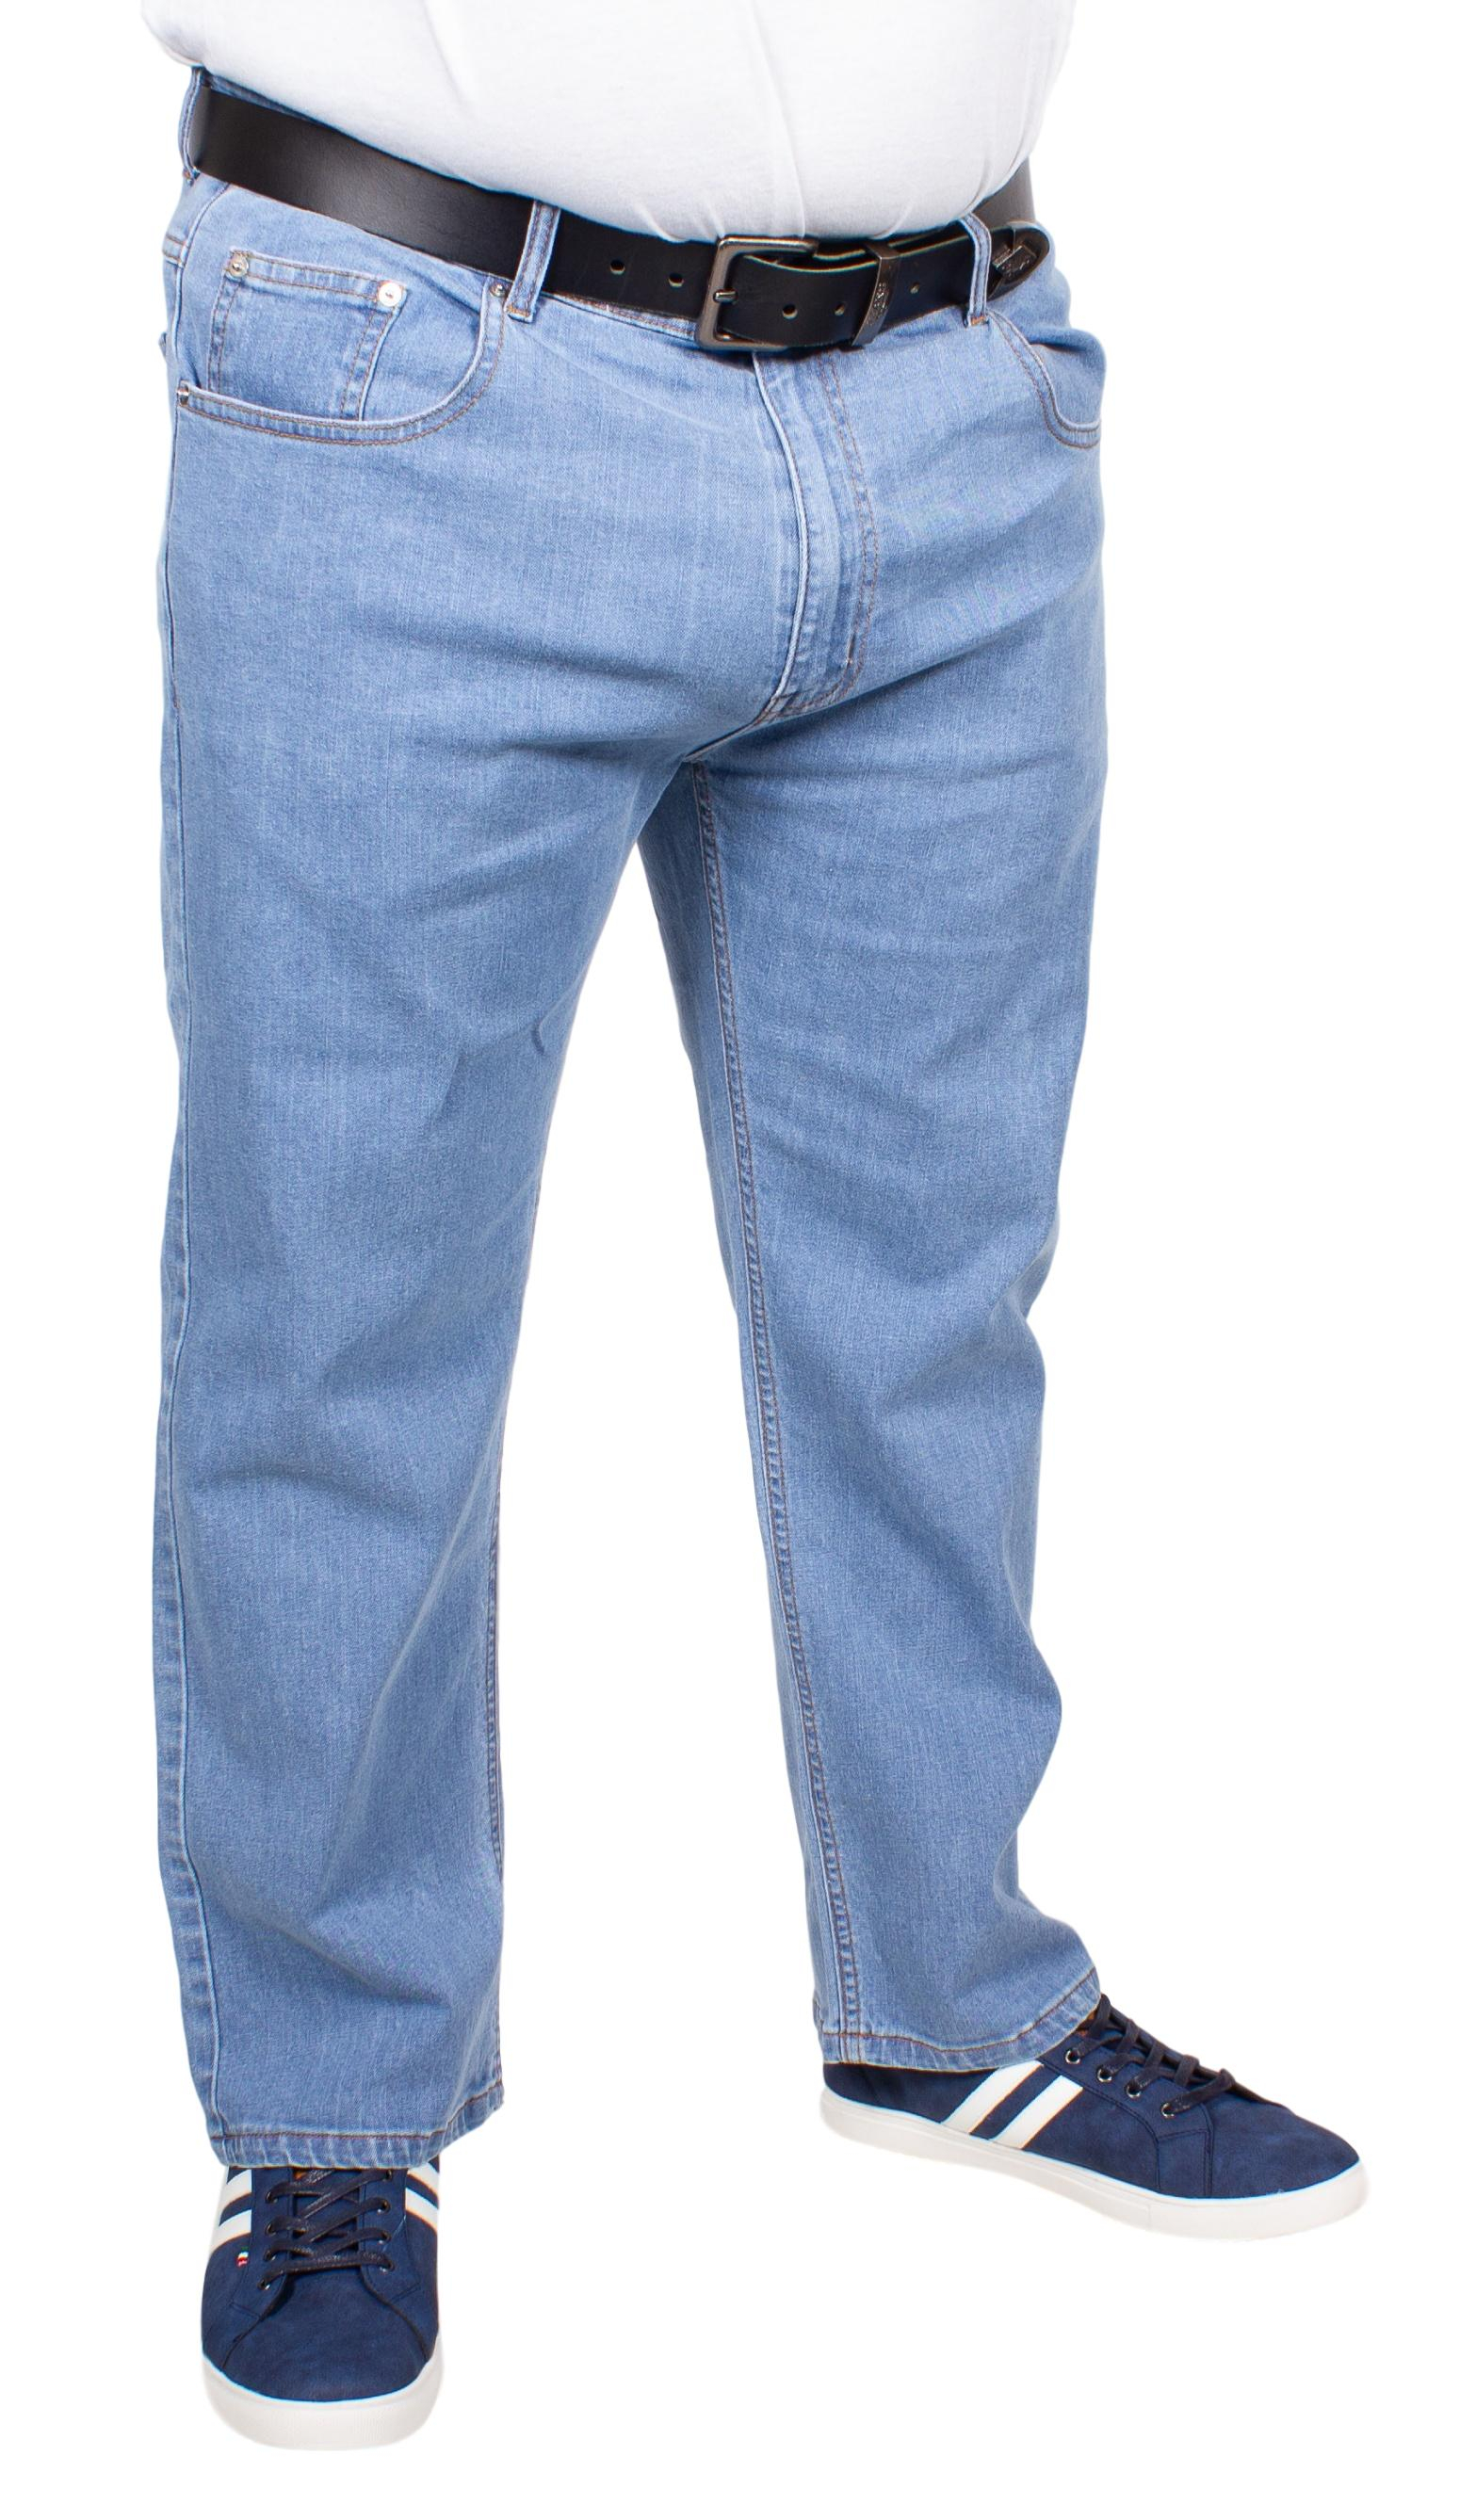 wrangler jeans for fat guys